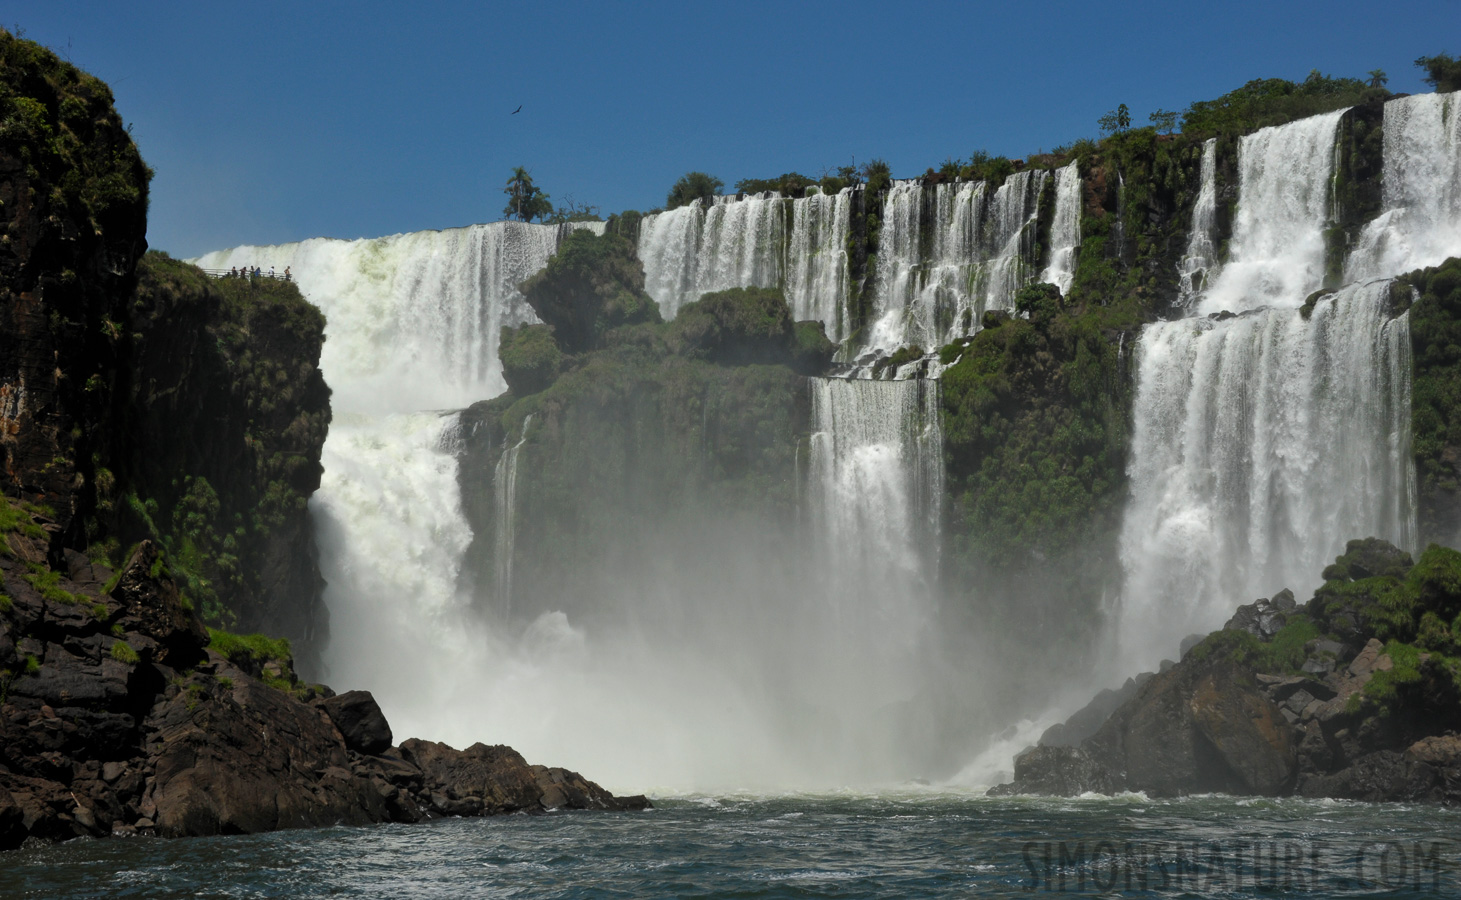 Cataratas del Iguazu [62 mm, 1/800 sec at f / 16, ISO 800]